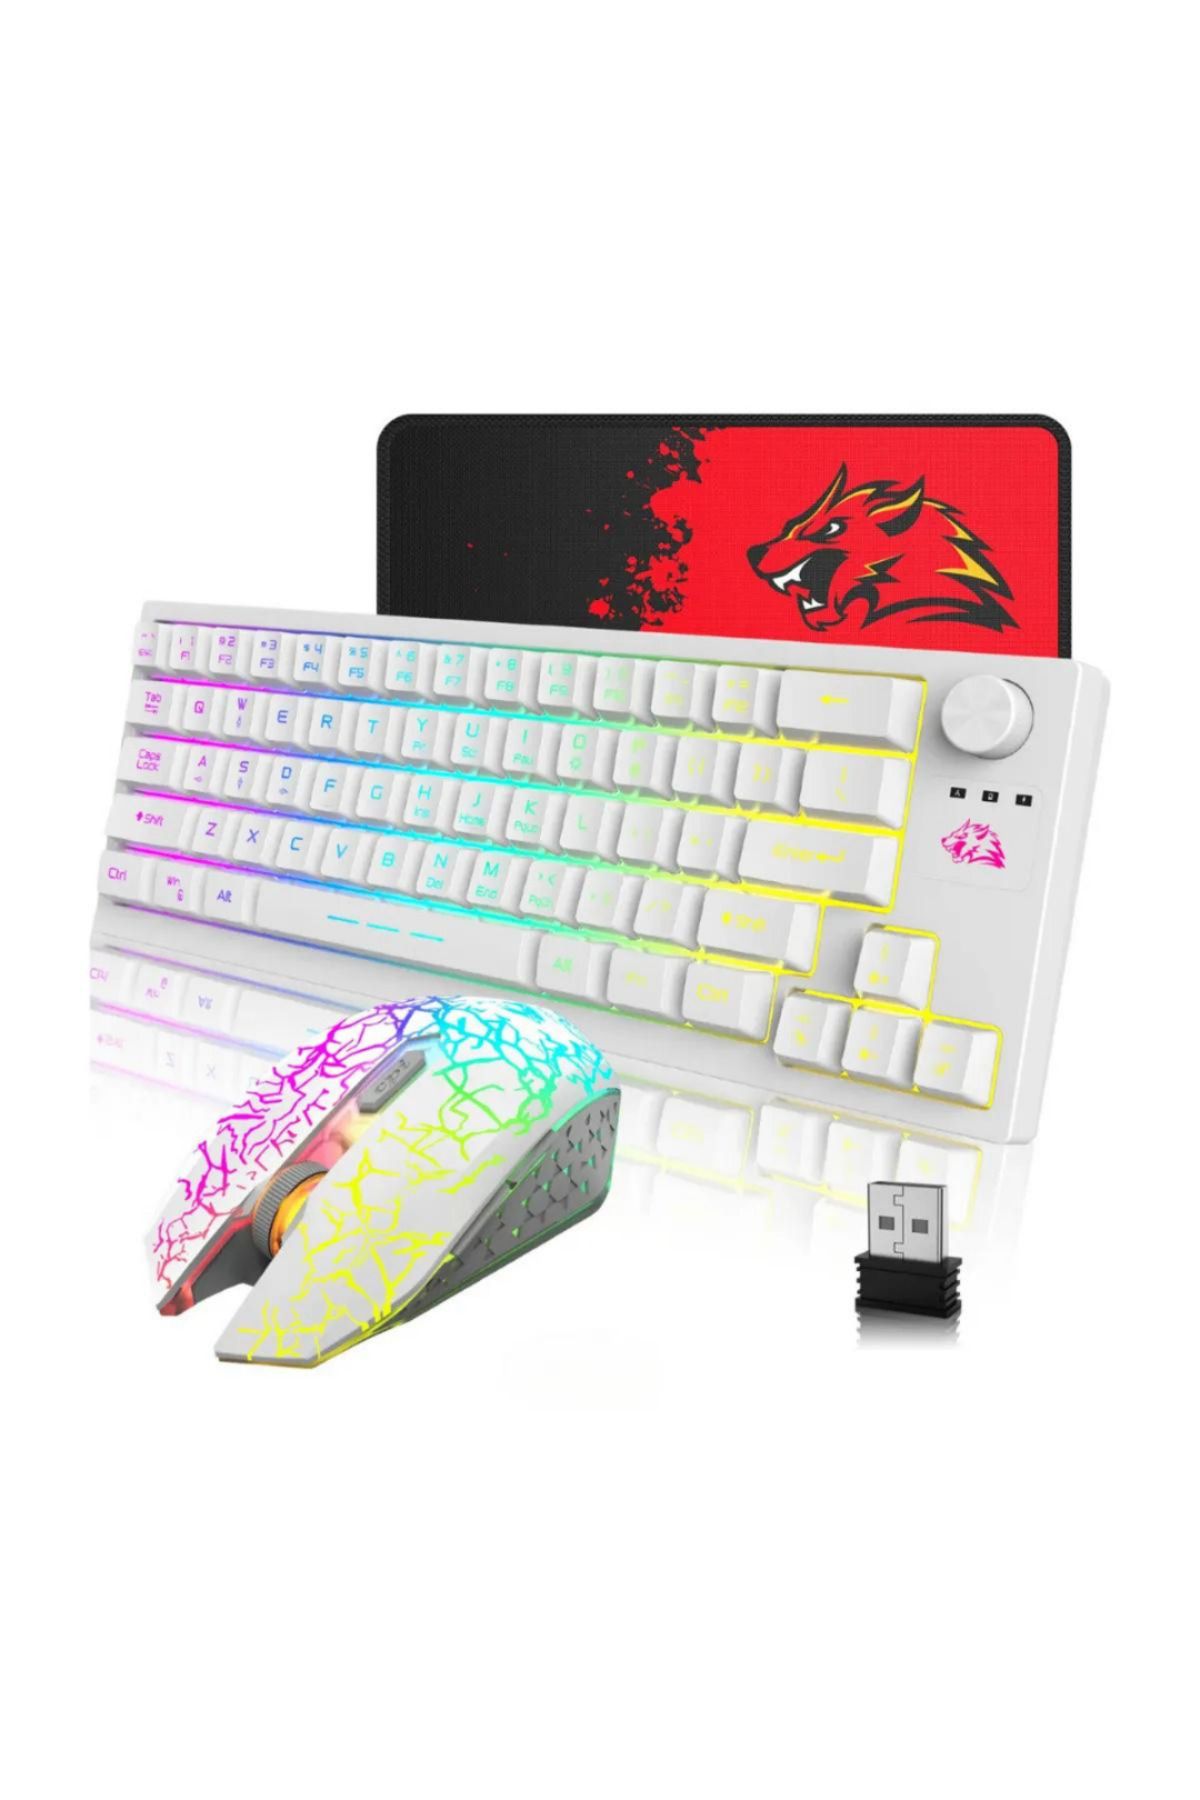 HEJARON LOBO T50 Kablosuz Işıklı Klavye Mouse Rainbow Aydınlatmalı Mousepad Hediyeli